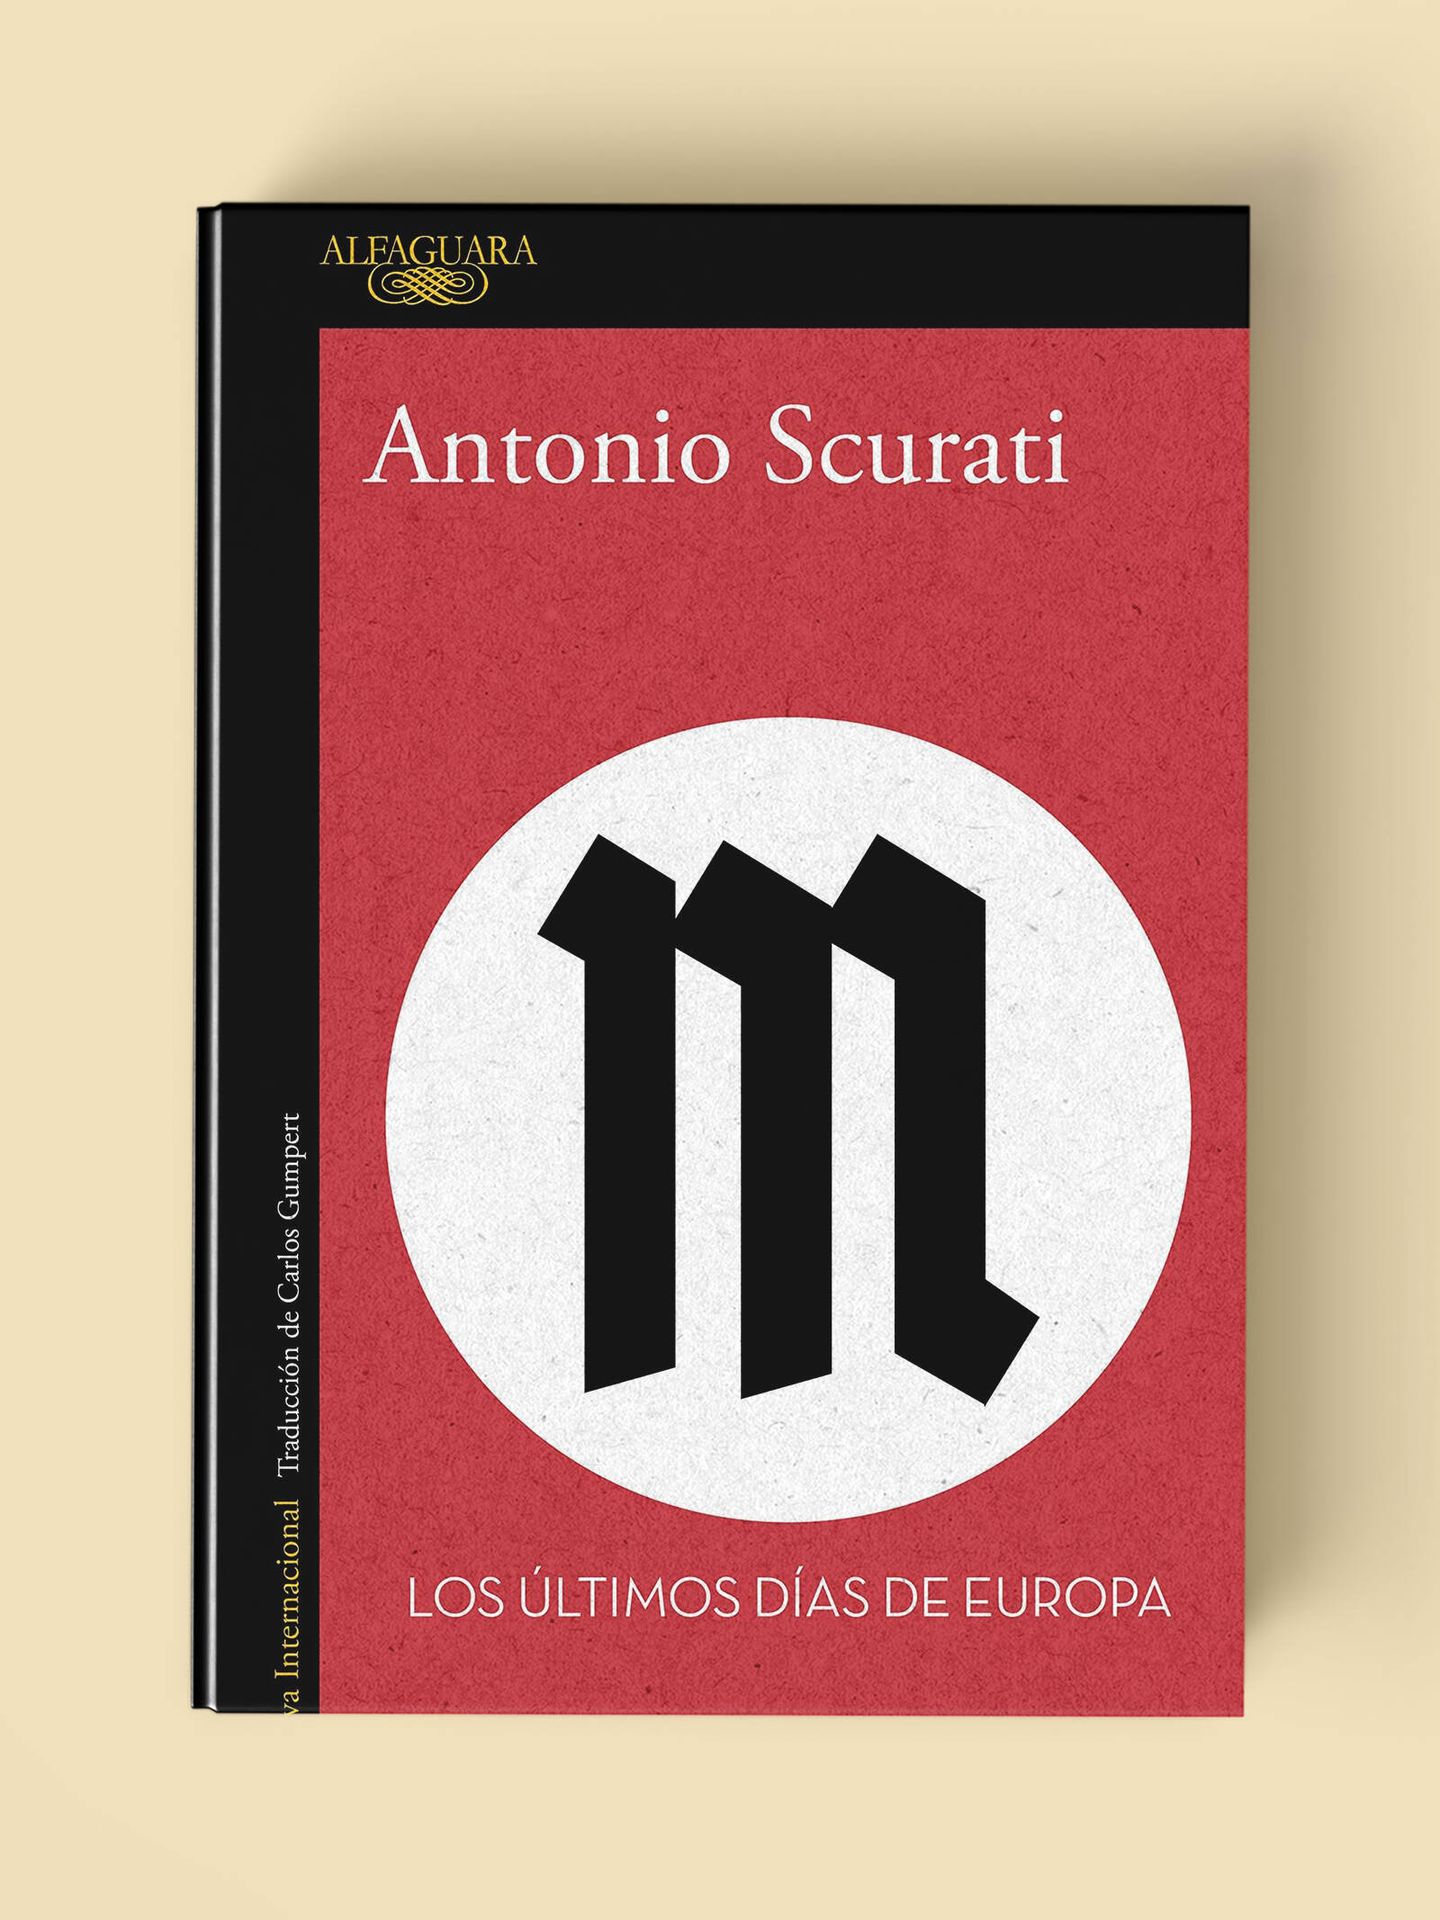 Portada de 'M. Los últimos días de Europa', tercera parte de la gran tetralogía de Antonio Scurati sobre Mussolini.